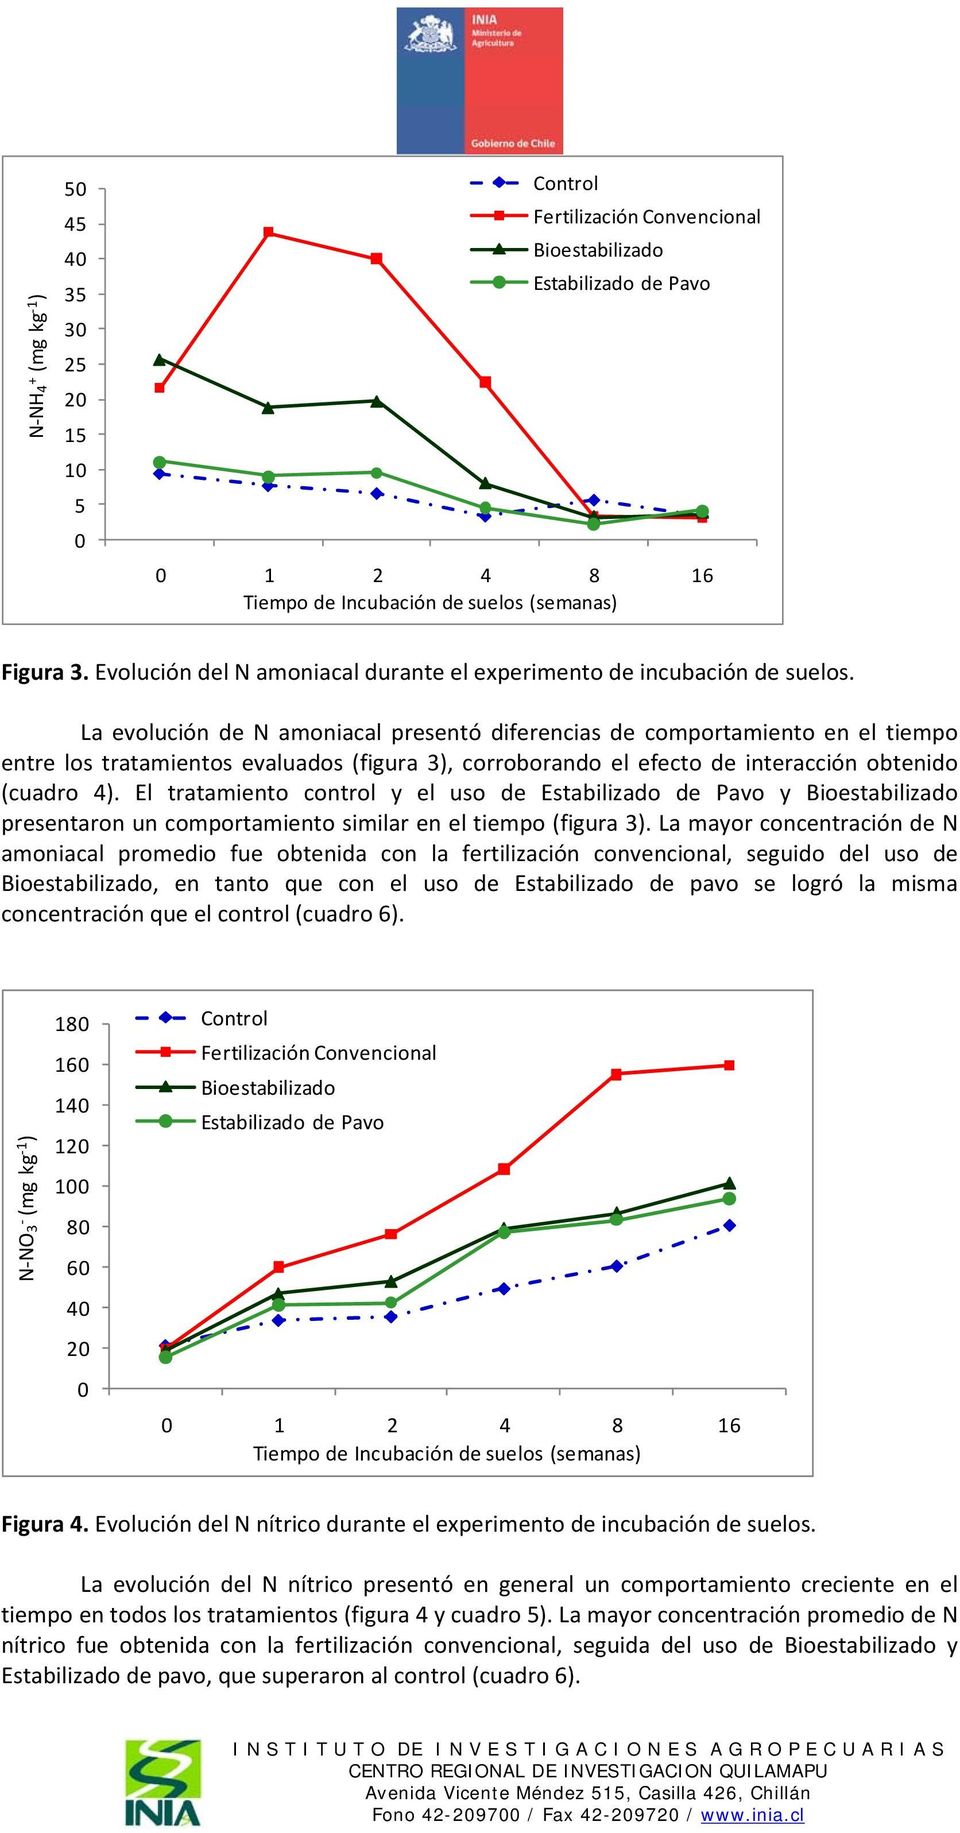 La evolución de N amoniacal presentó diferencias de comportamiento en el tiempo entre los tratamientos evaluados (figura 3), corroborando el efecto de interacción obtenido (cuadro 4).